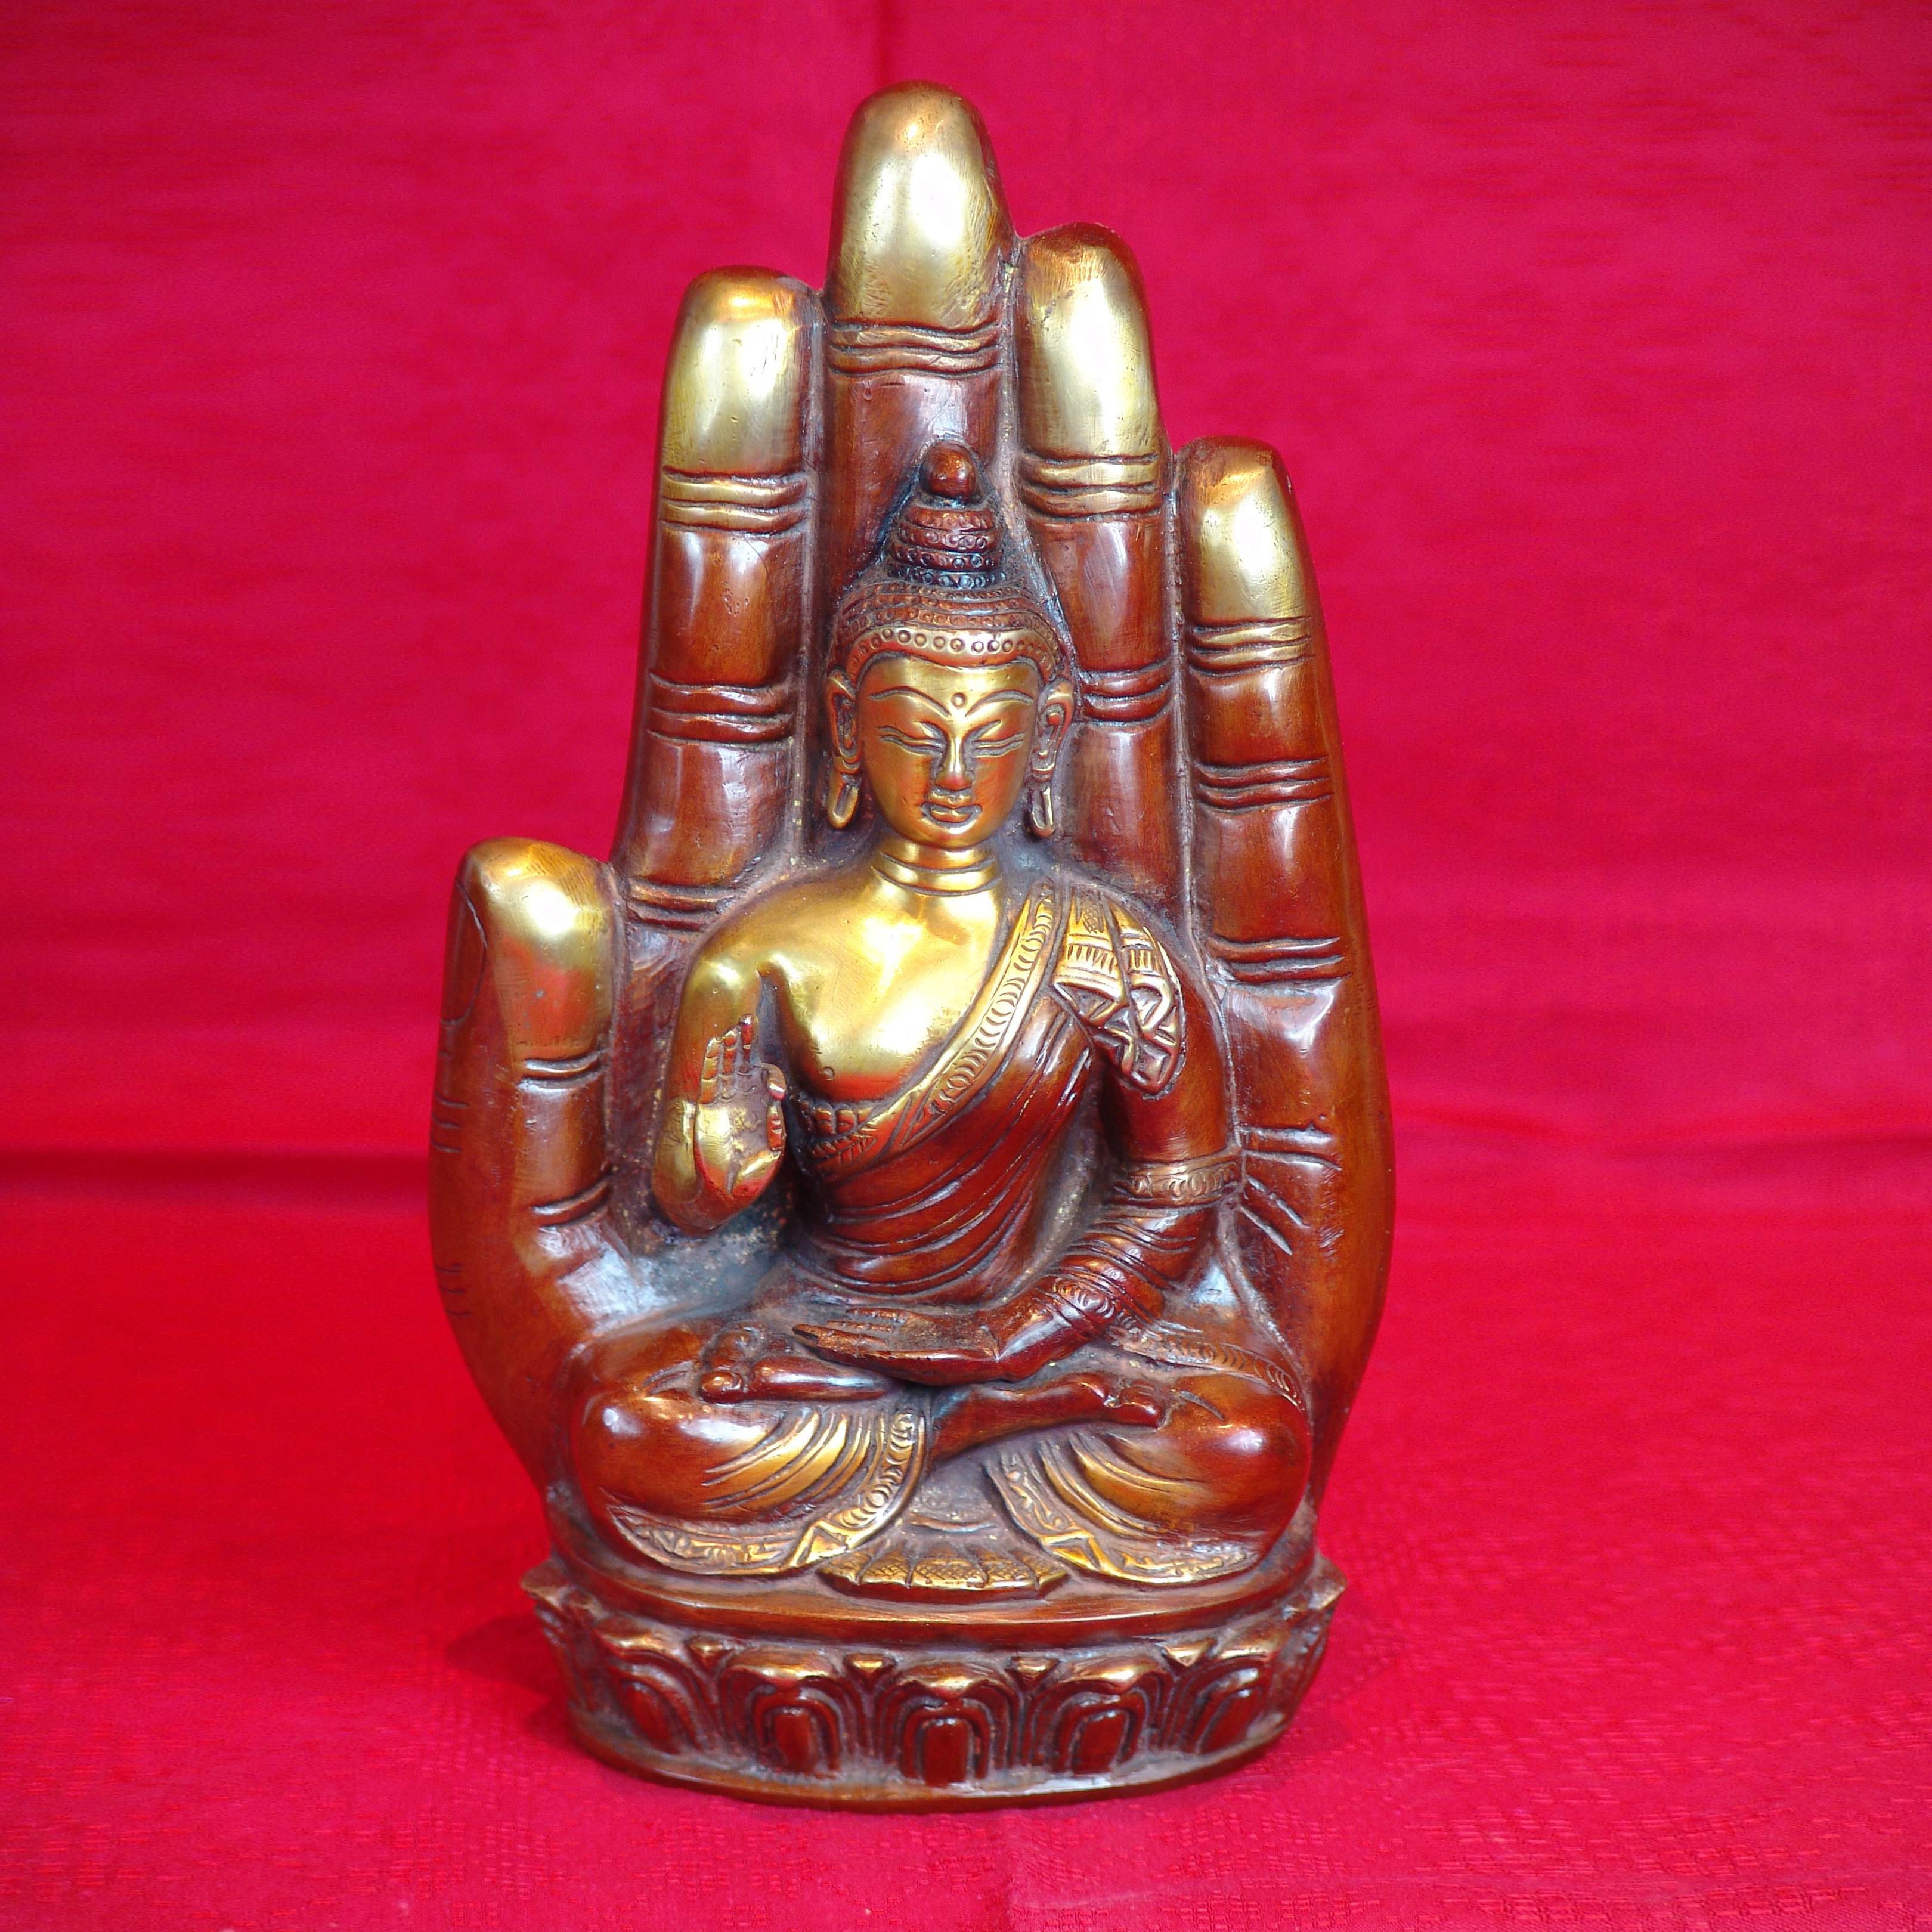 Hindu Bronze Statue - Buddha on hand